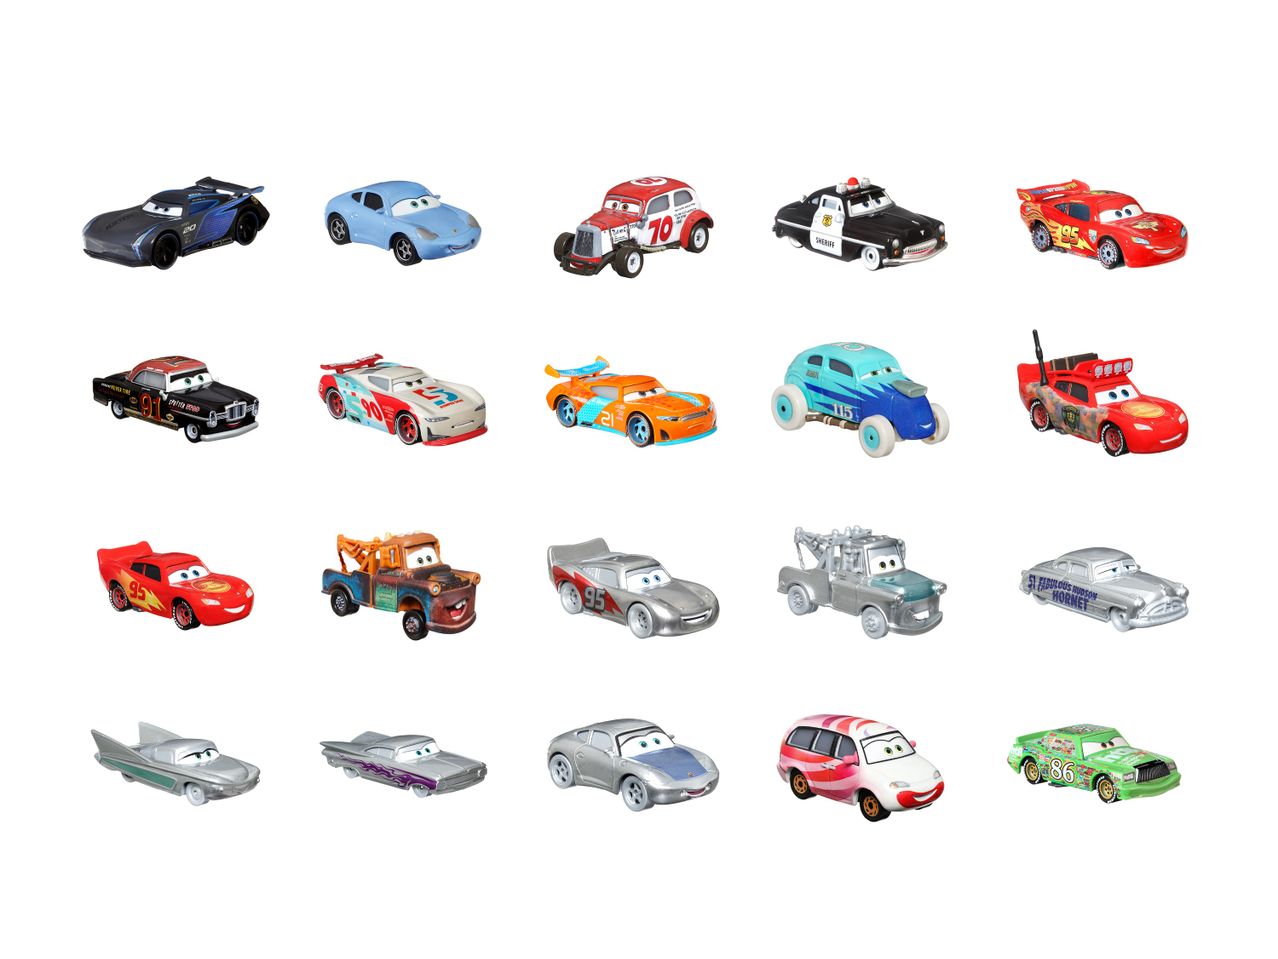 Samochodzik z kolekcji Cars , cena 21,99 PLN 
Samochodzik z kolekcji Cars 20 wzorów ...